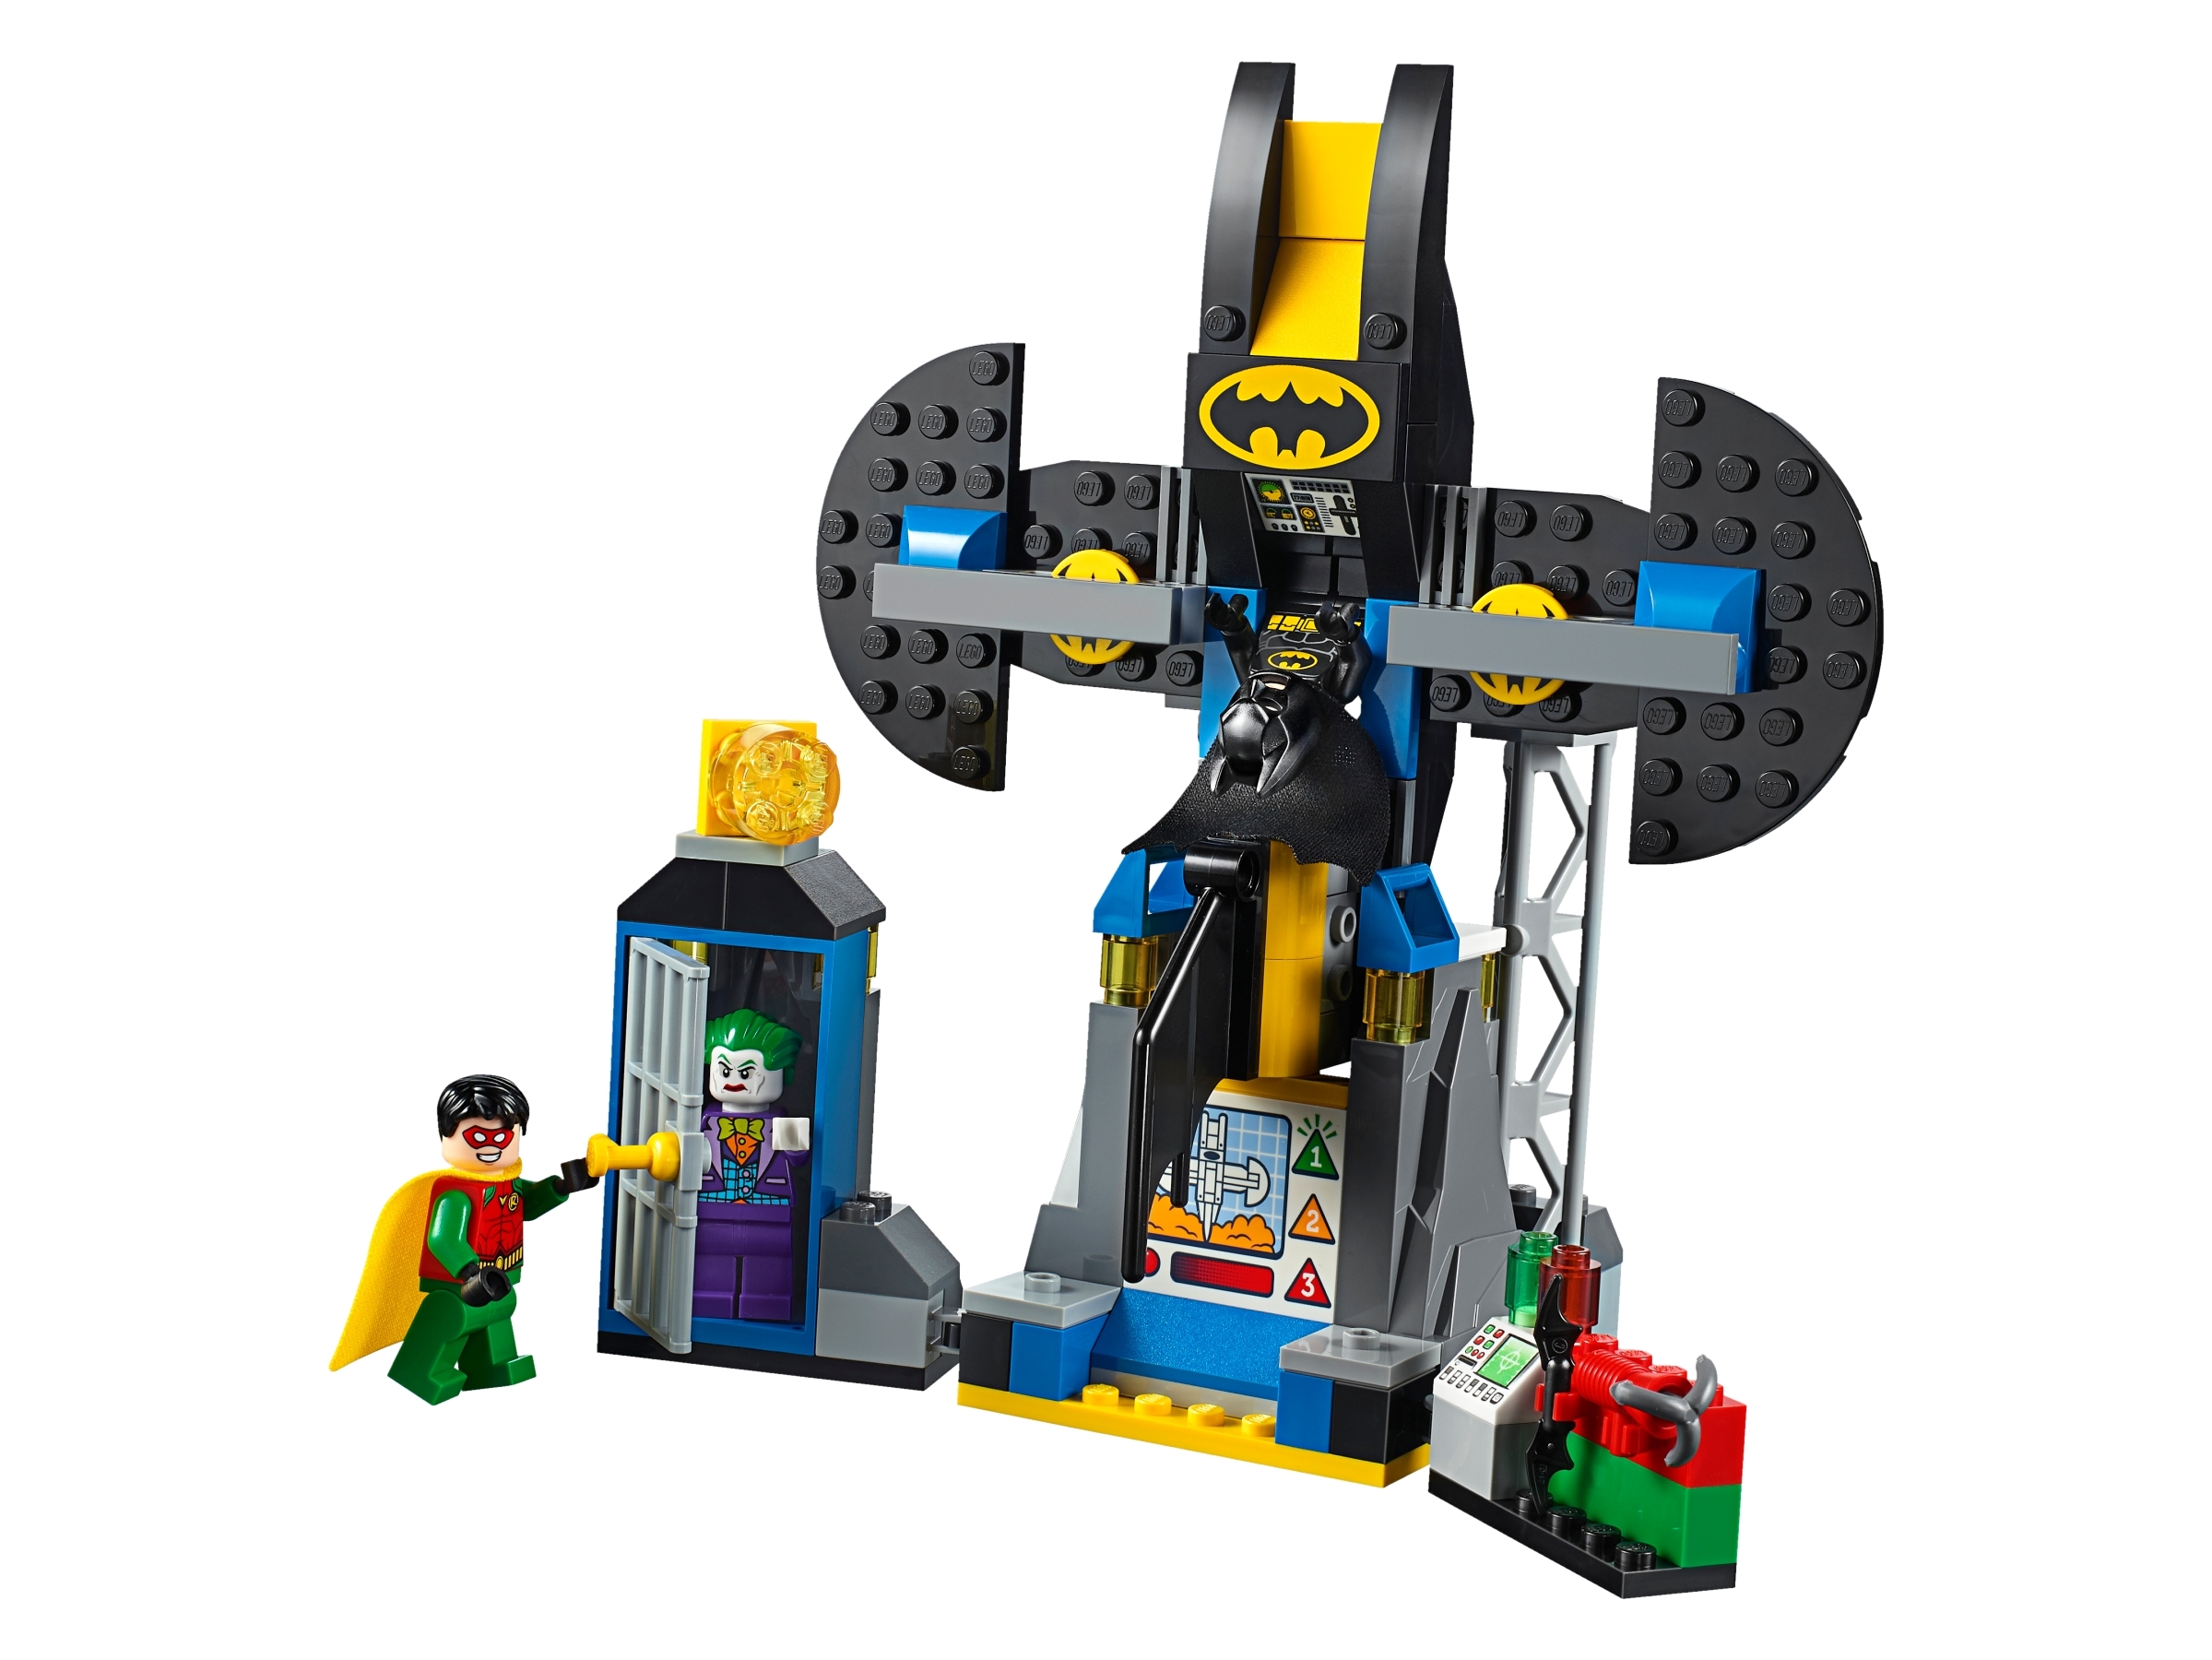 Neu & OVP LEGO Juniors 10753 Der Joker und die Bathöhle 